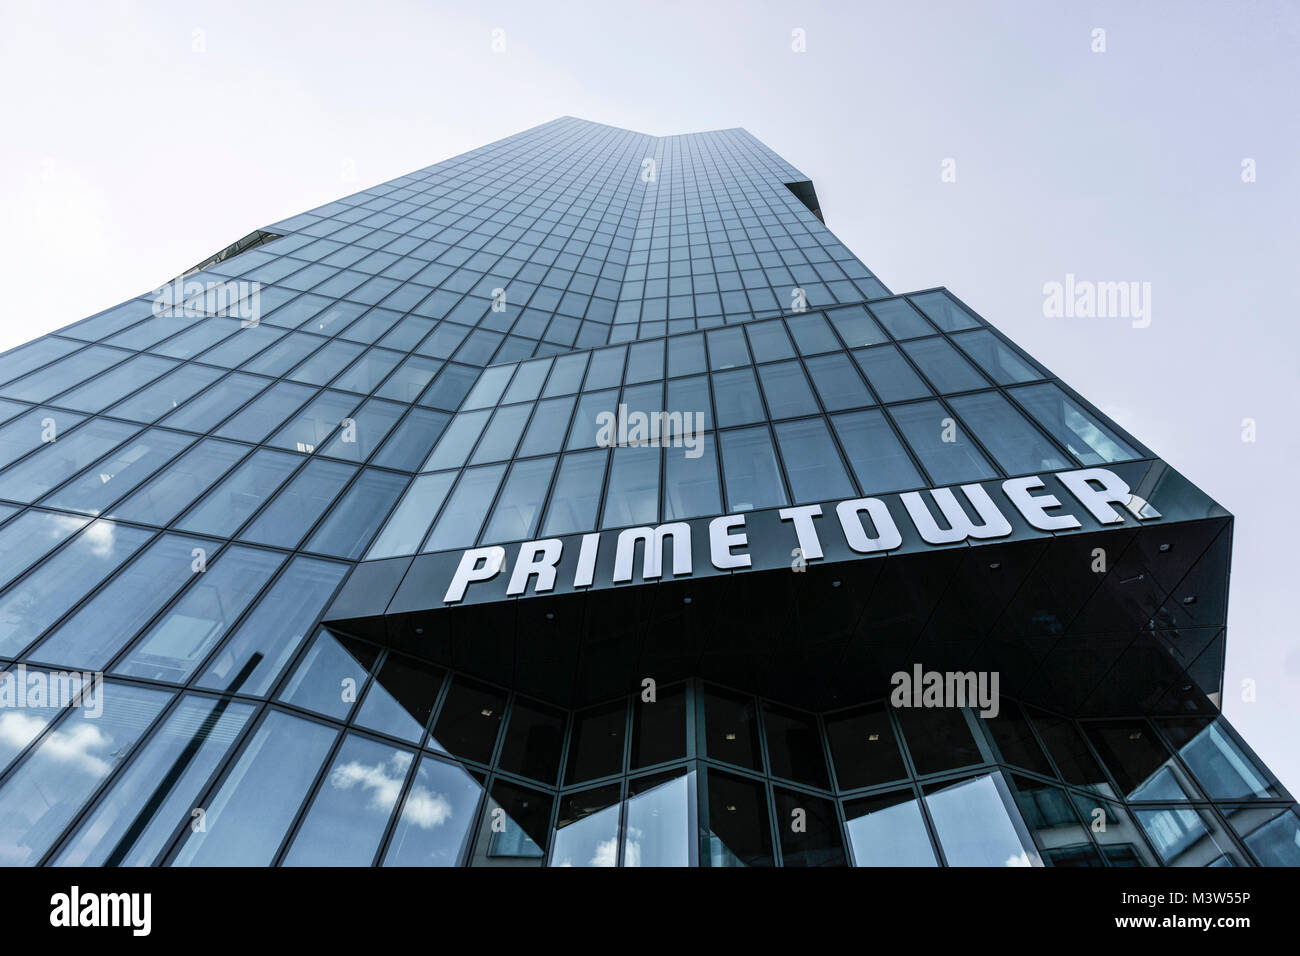 Prime Tower, department 5, modern office building, Zurich, Switzerland Stock Photo